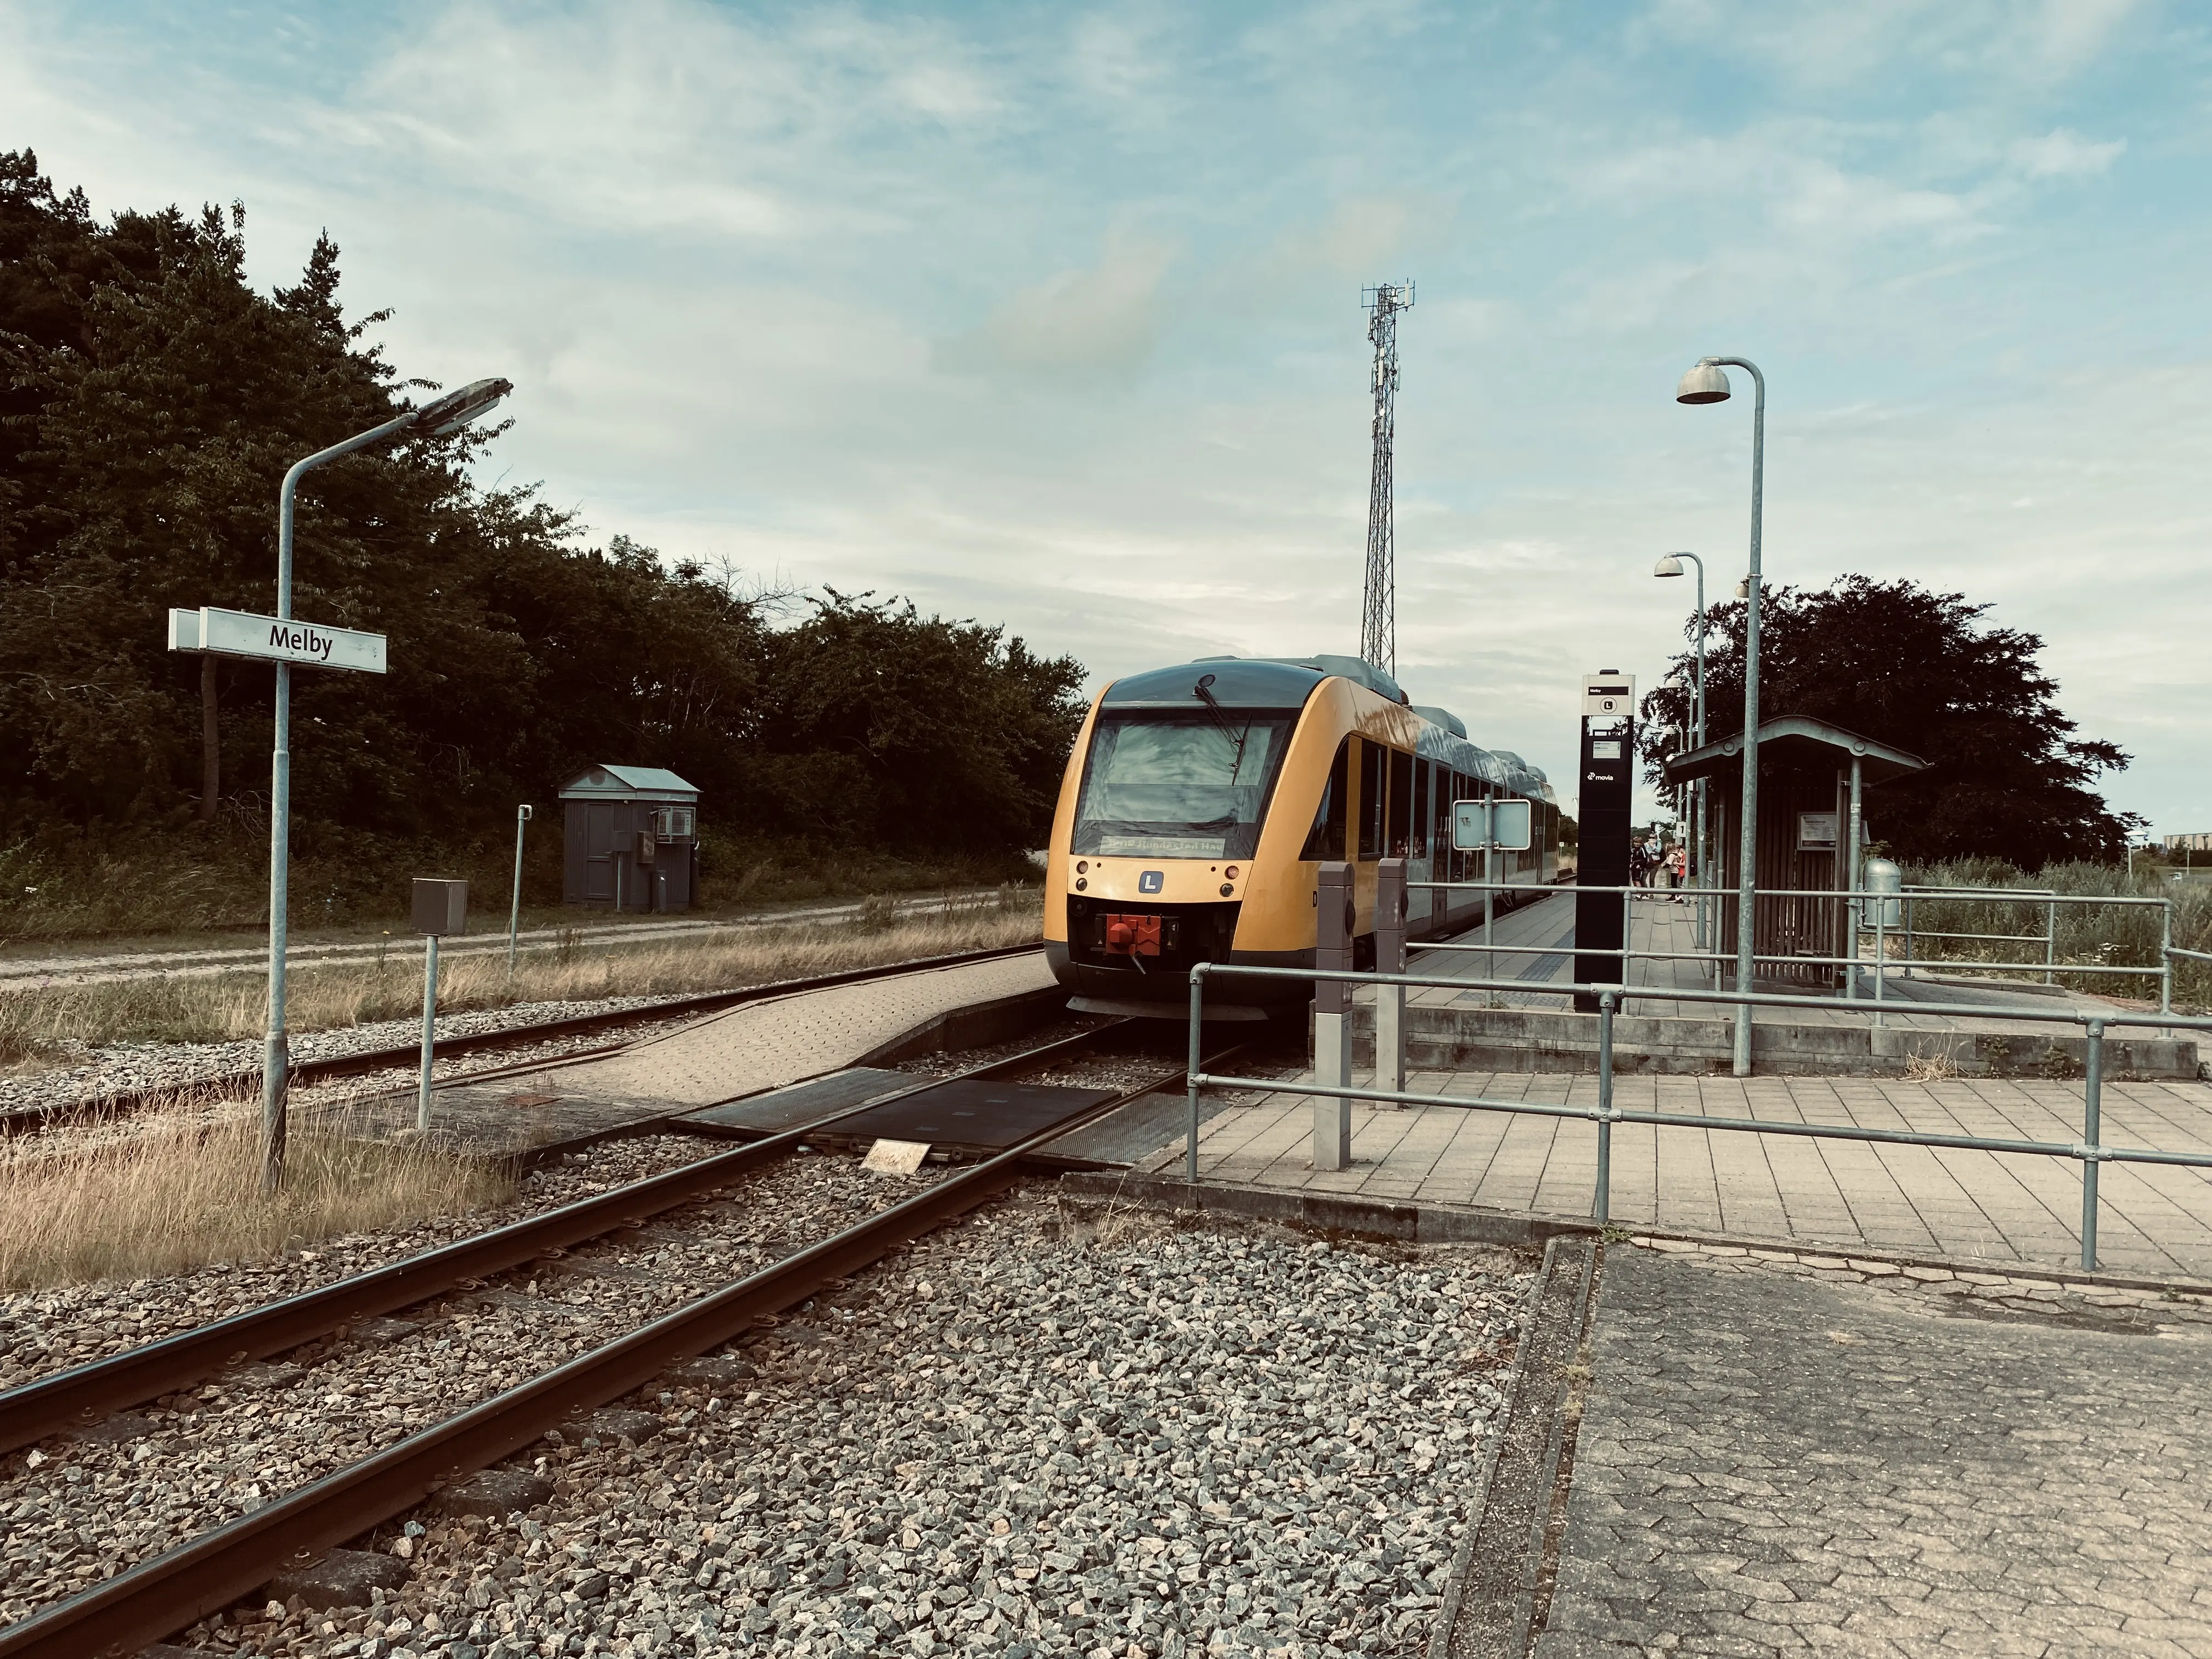 Billede af tog ud for Melby Station.